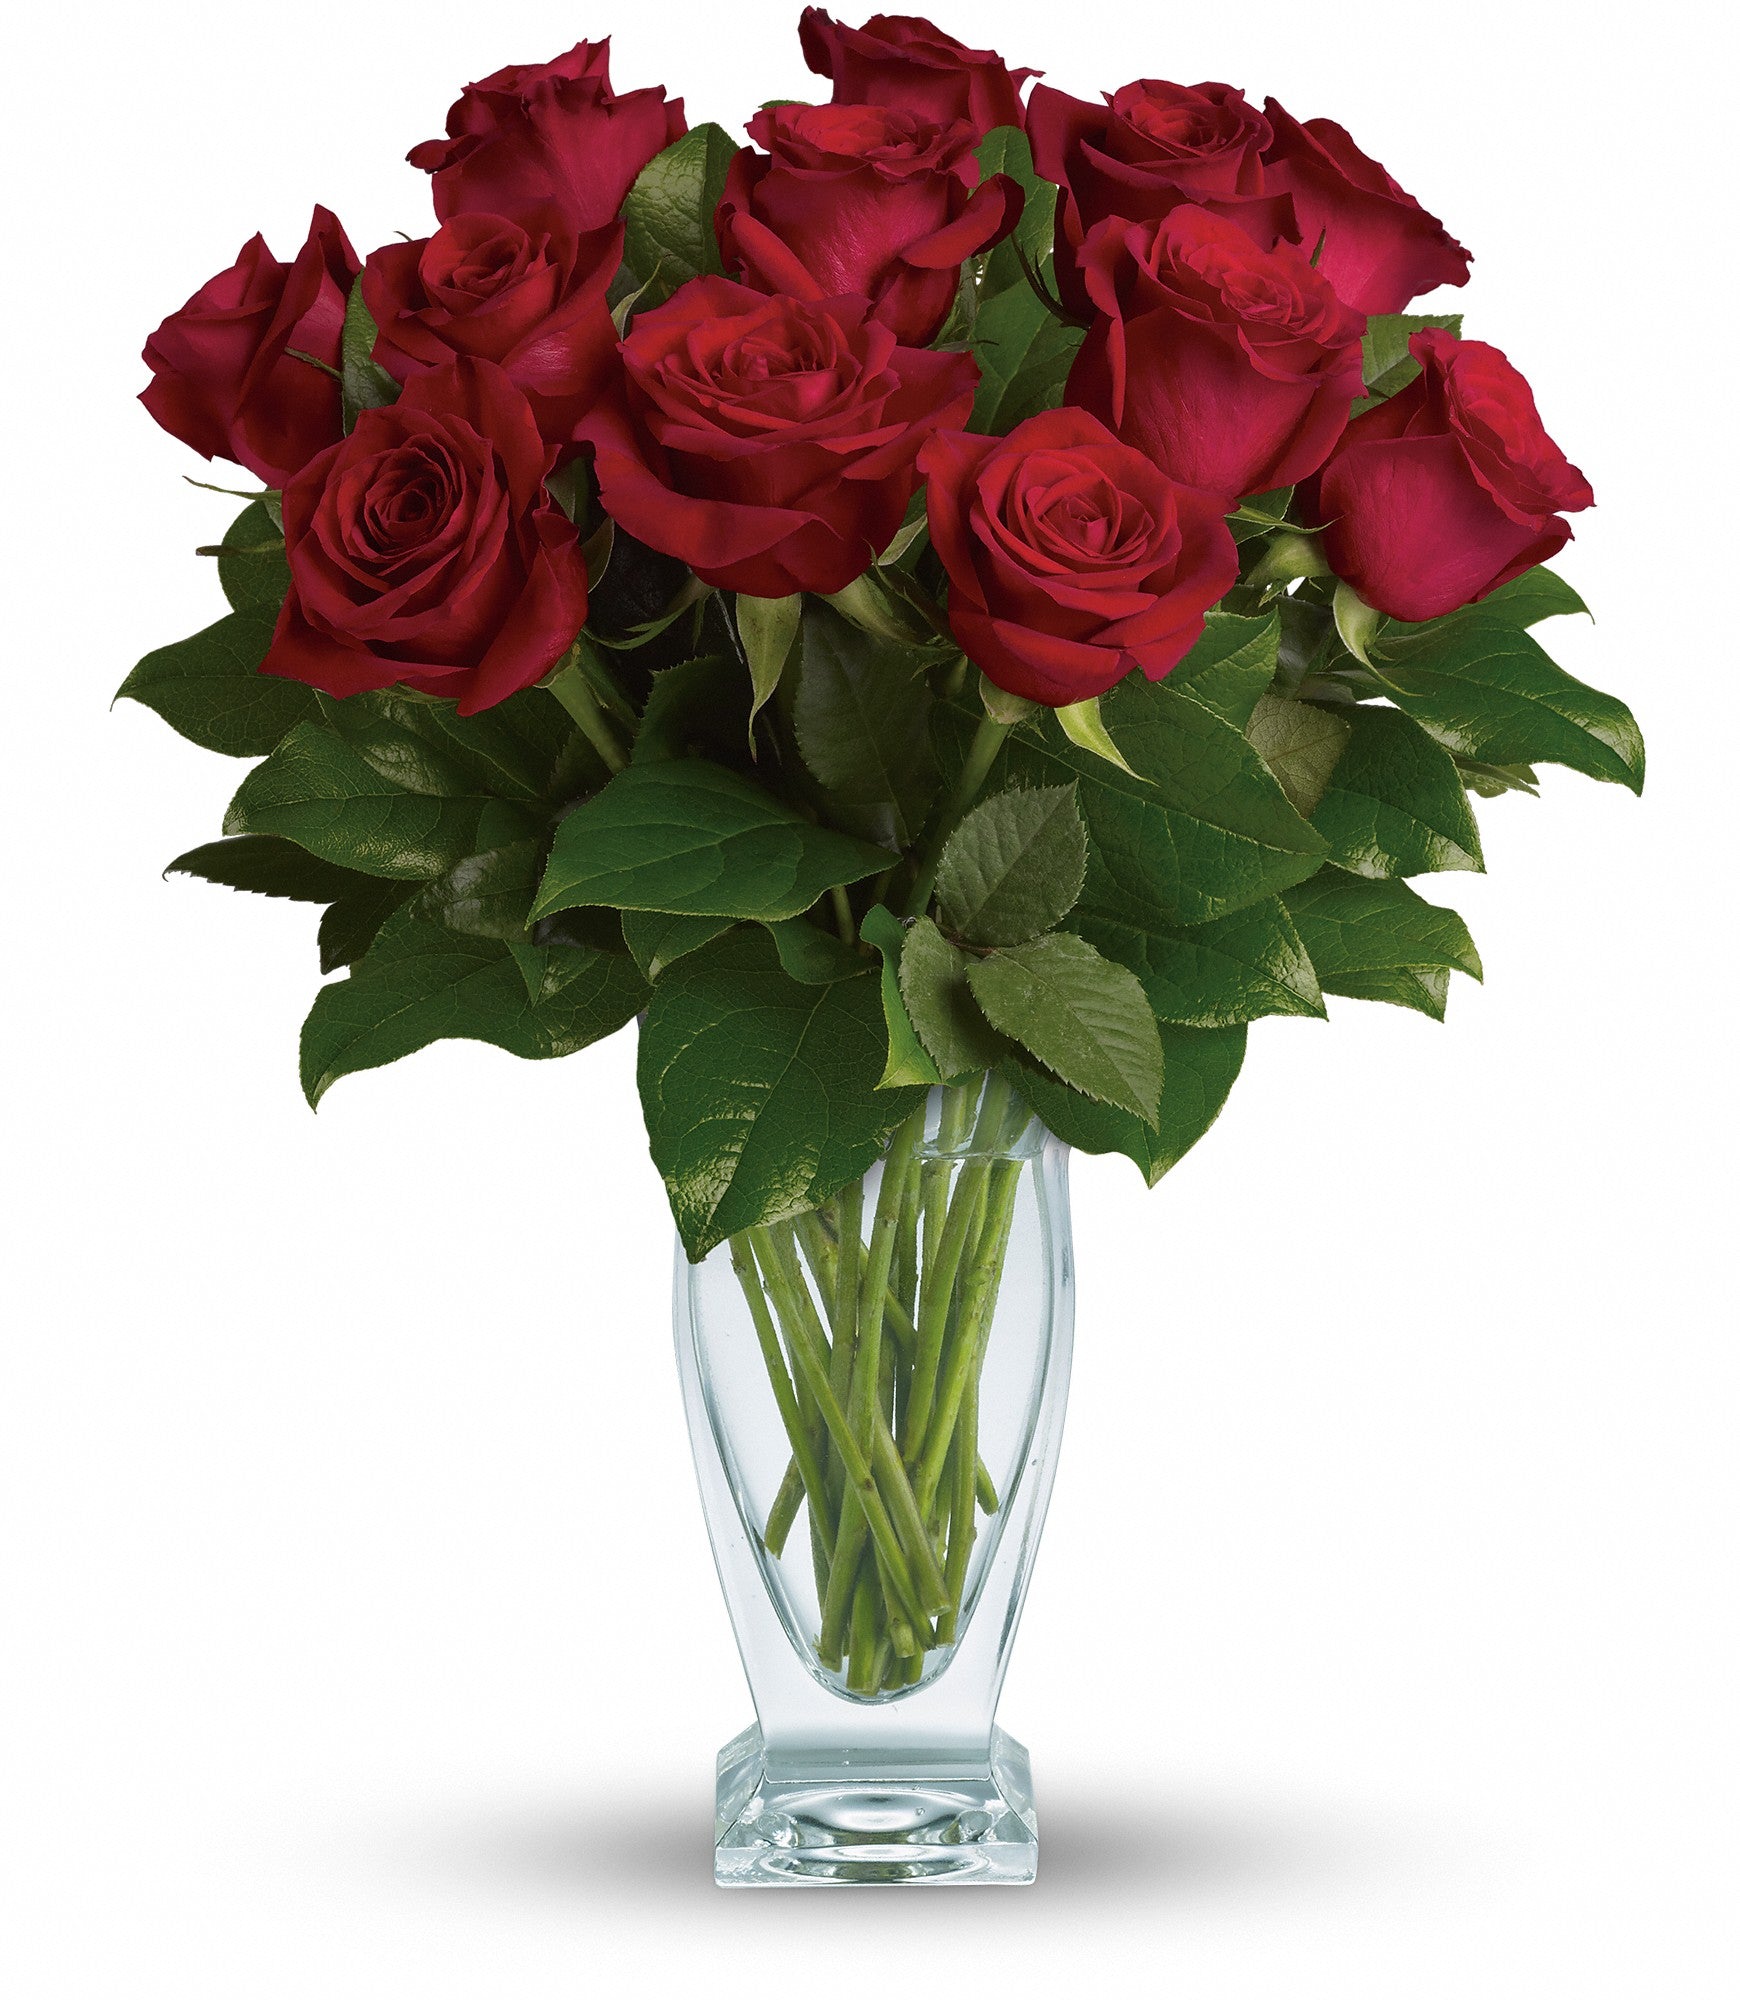 rose-classique-dozen-red-roses